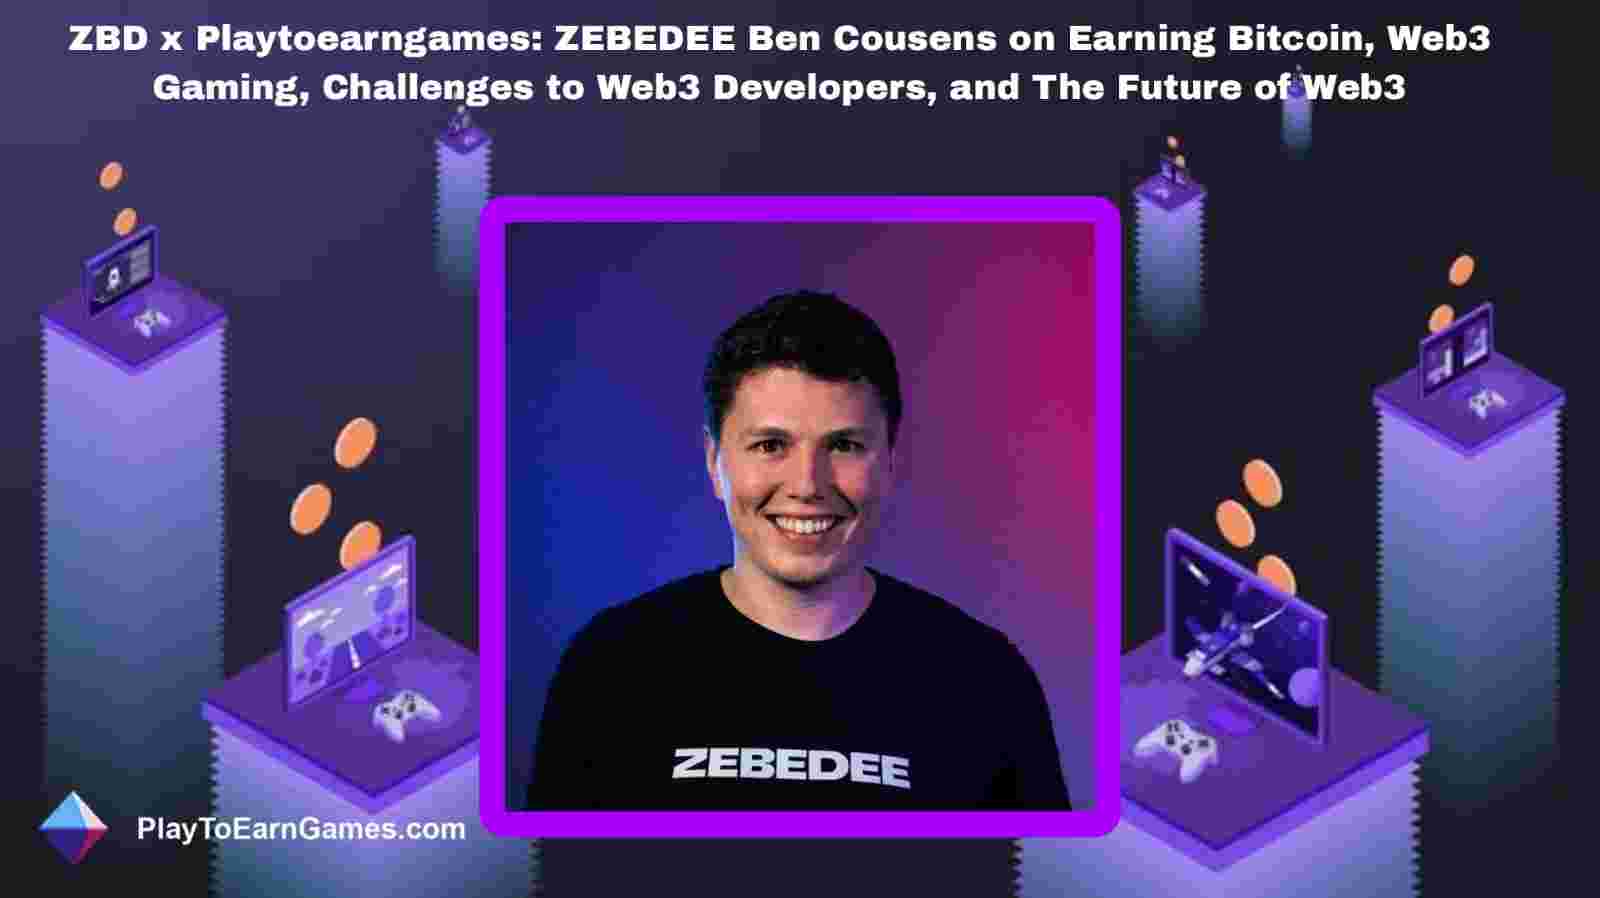 ZBDs Bitcoin-Belohnungen, Trends und Interview mit Ben Cousens